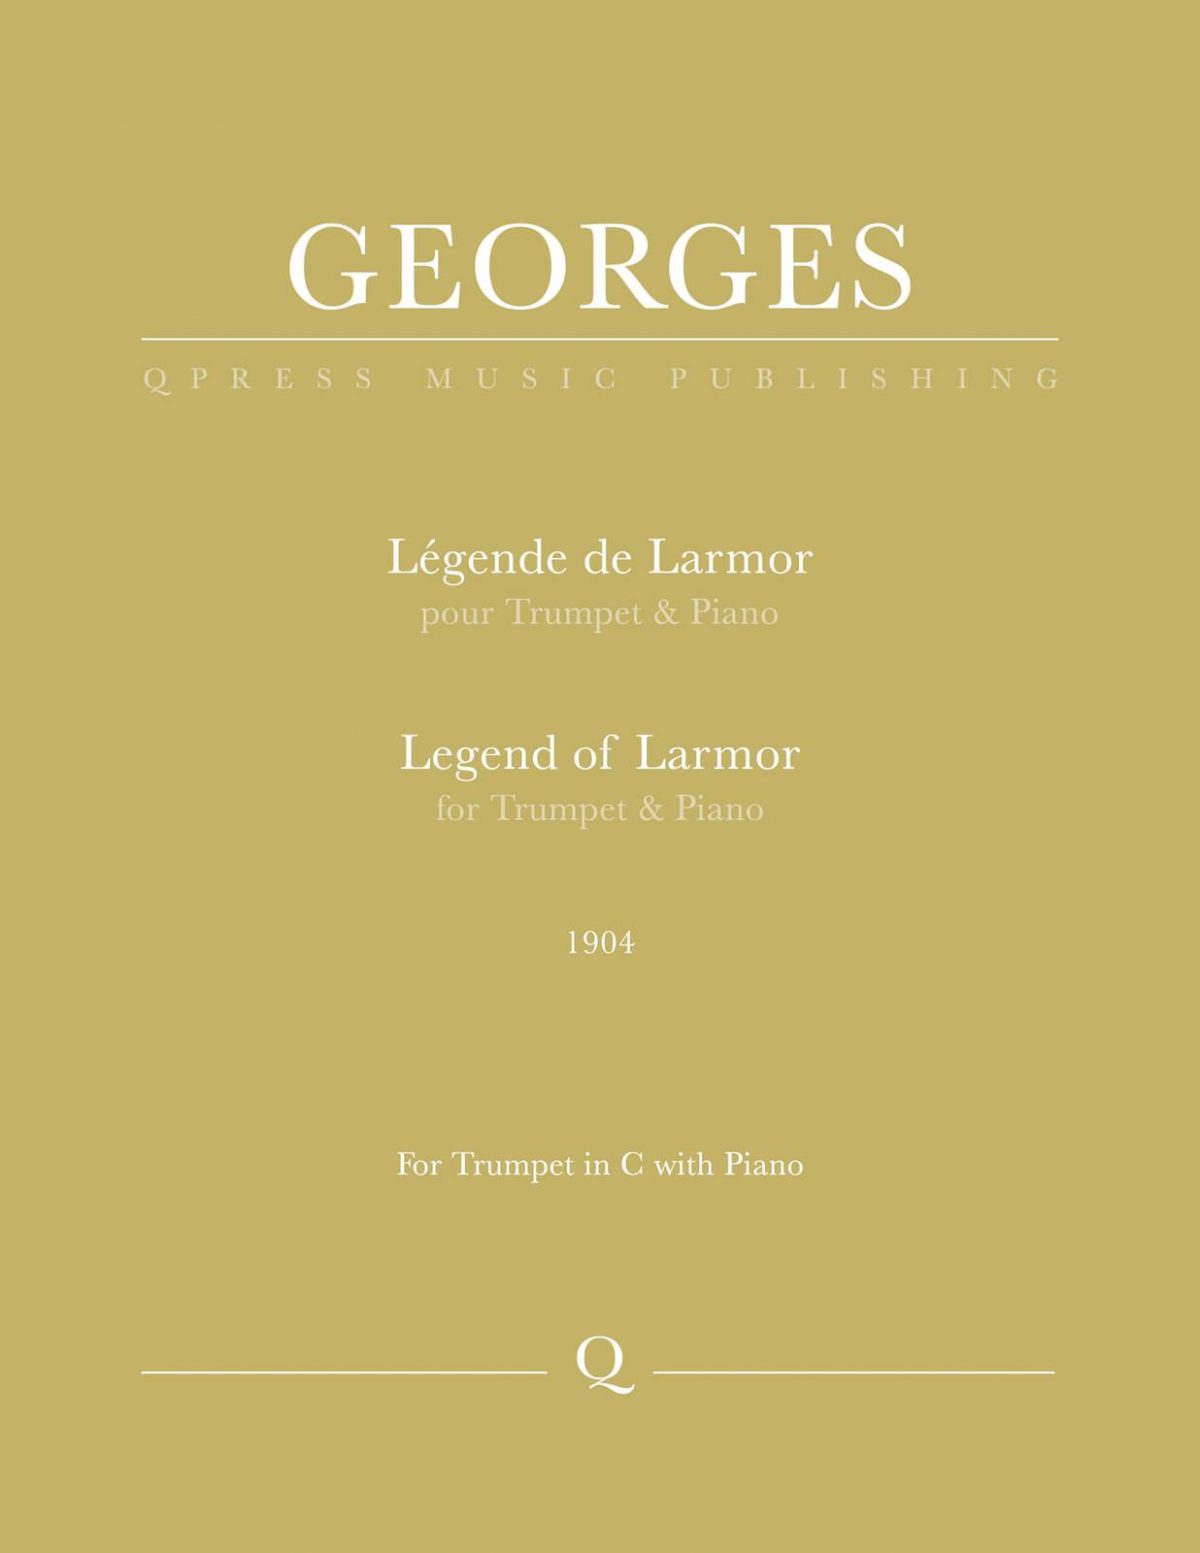 Georges, Légende de Larmor-p01